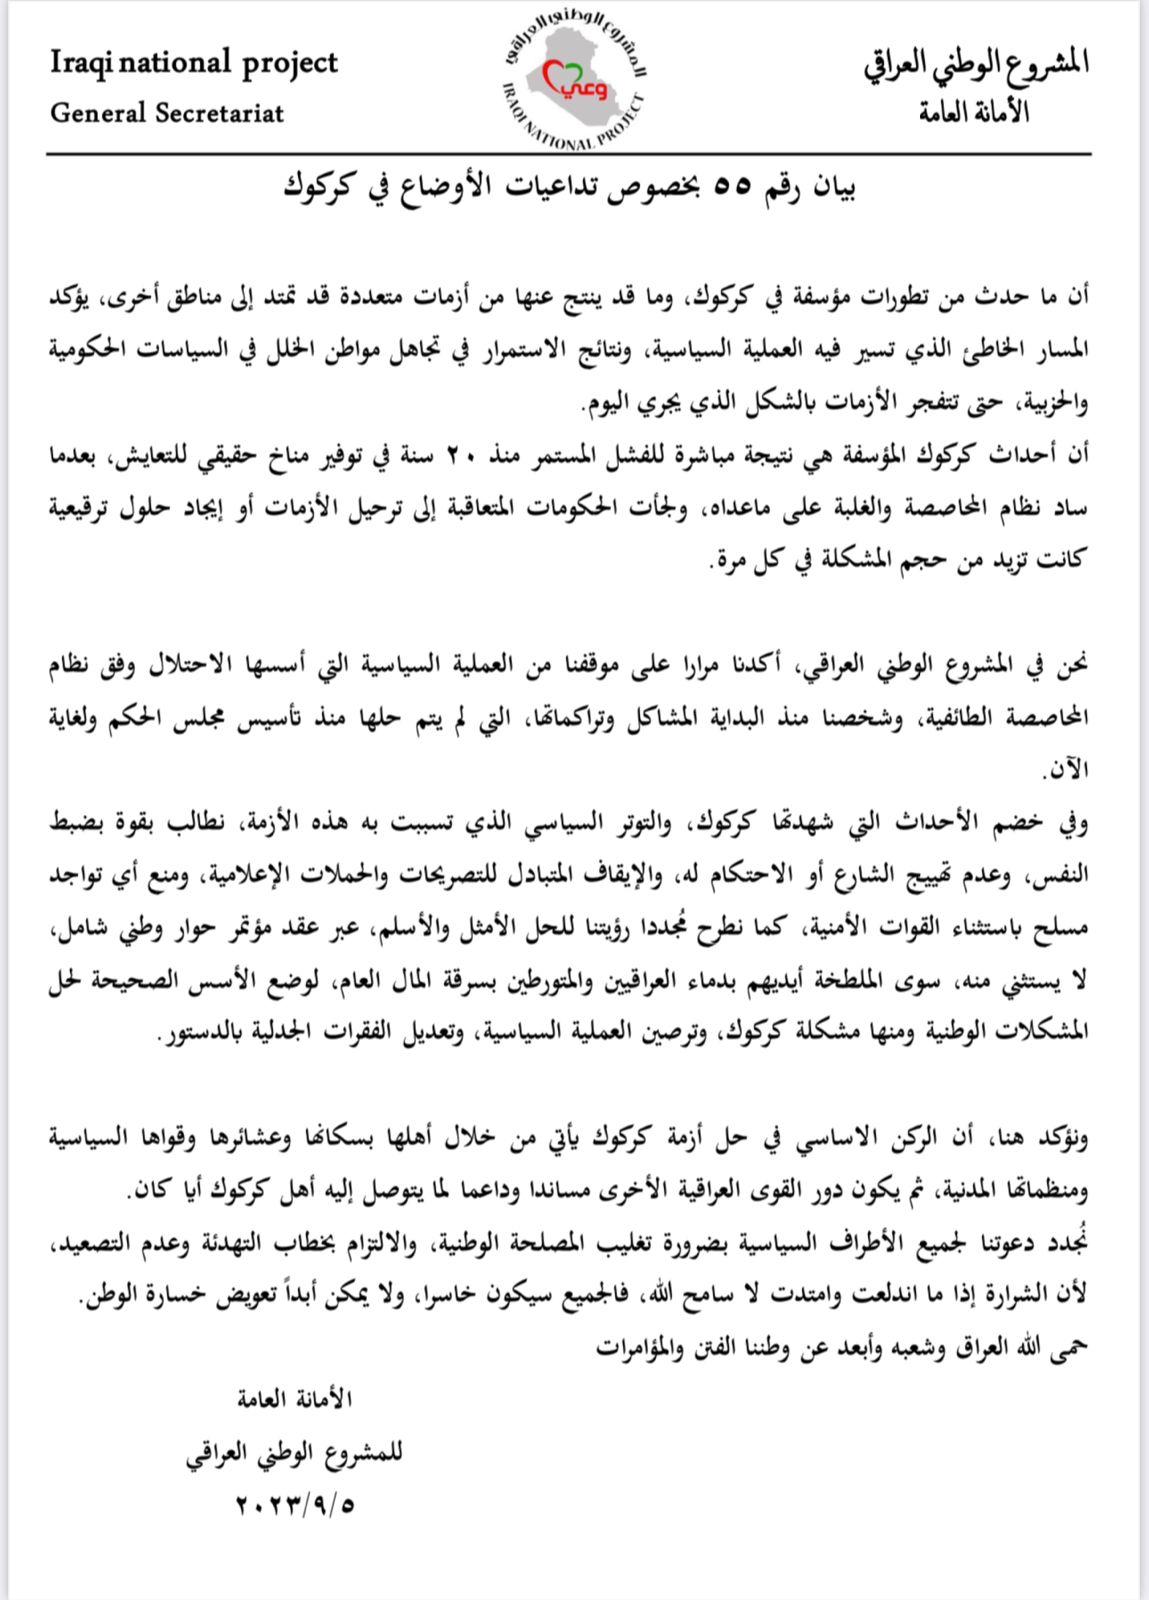 الامانة العامة للمشروع الوطني العراقي تصدر بيان حول تداعيات الاوضاع في كركوك